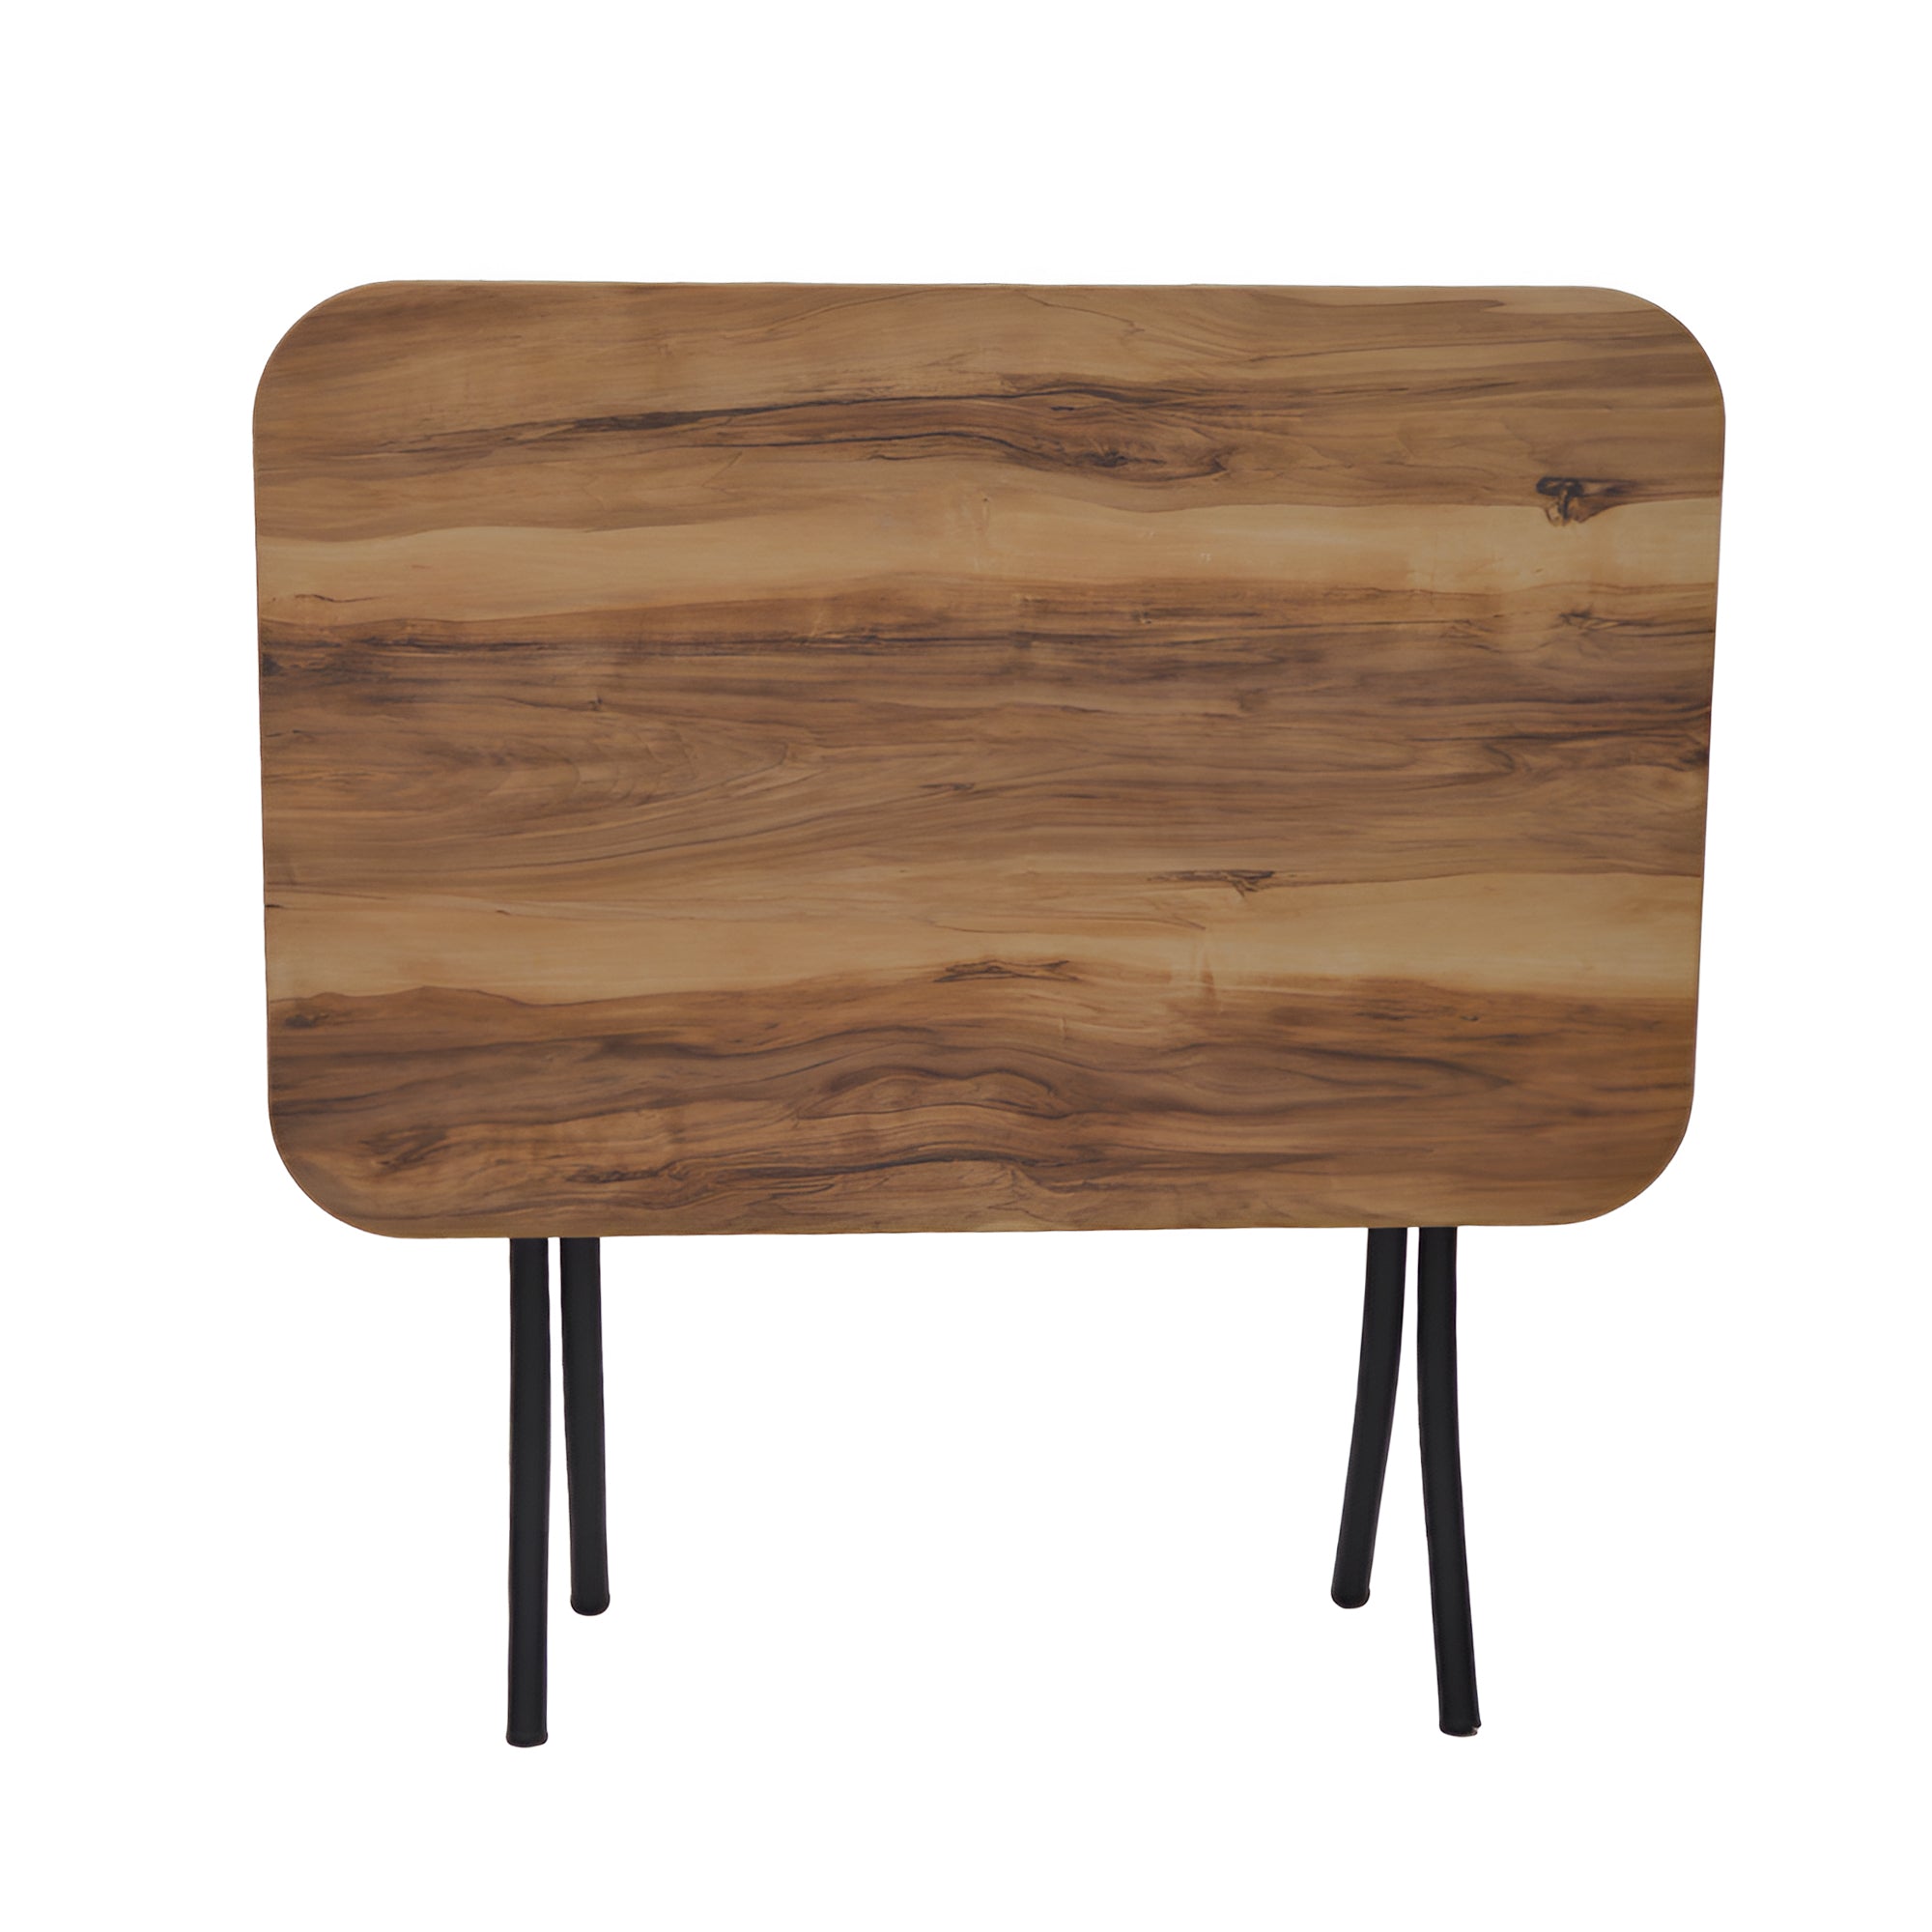 طاولة مستطيلة من الخشب قابلة للطي 90*60 سم